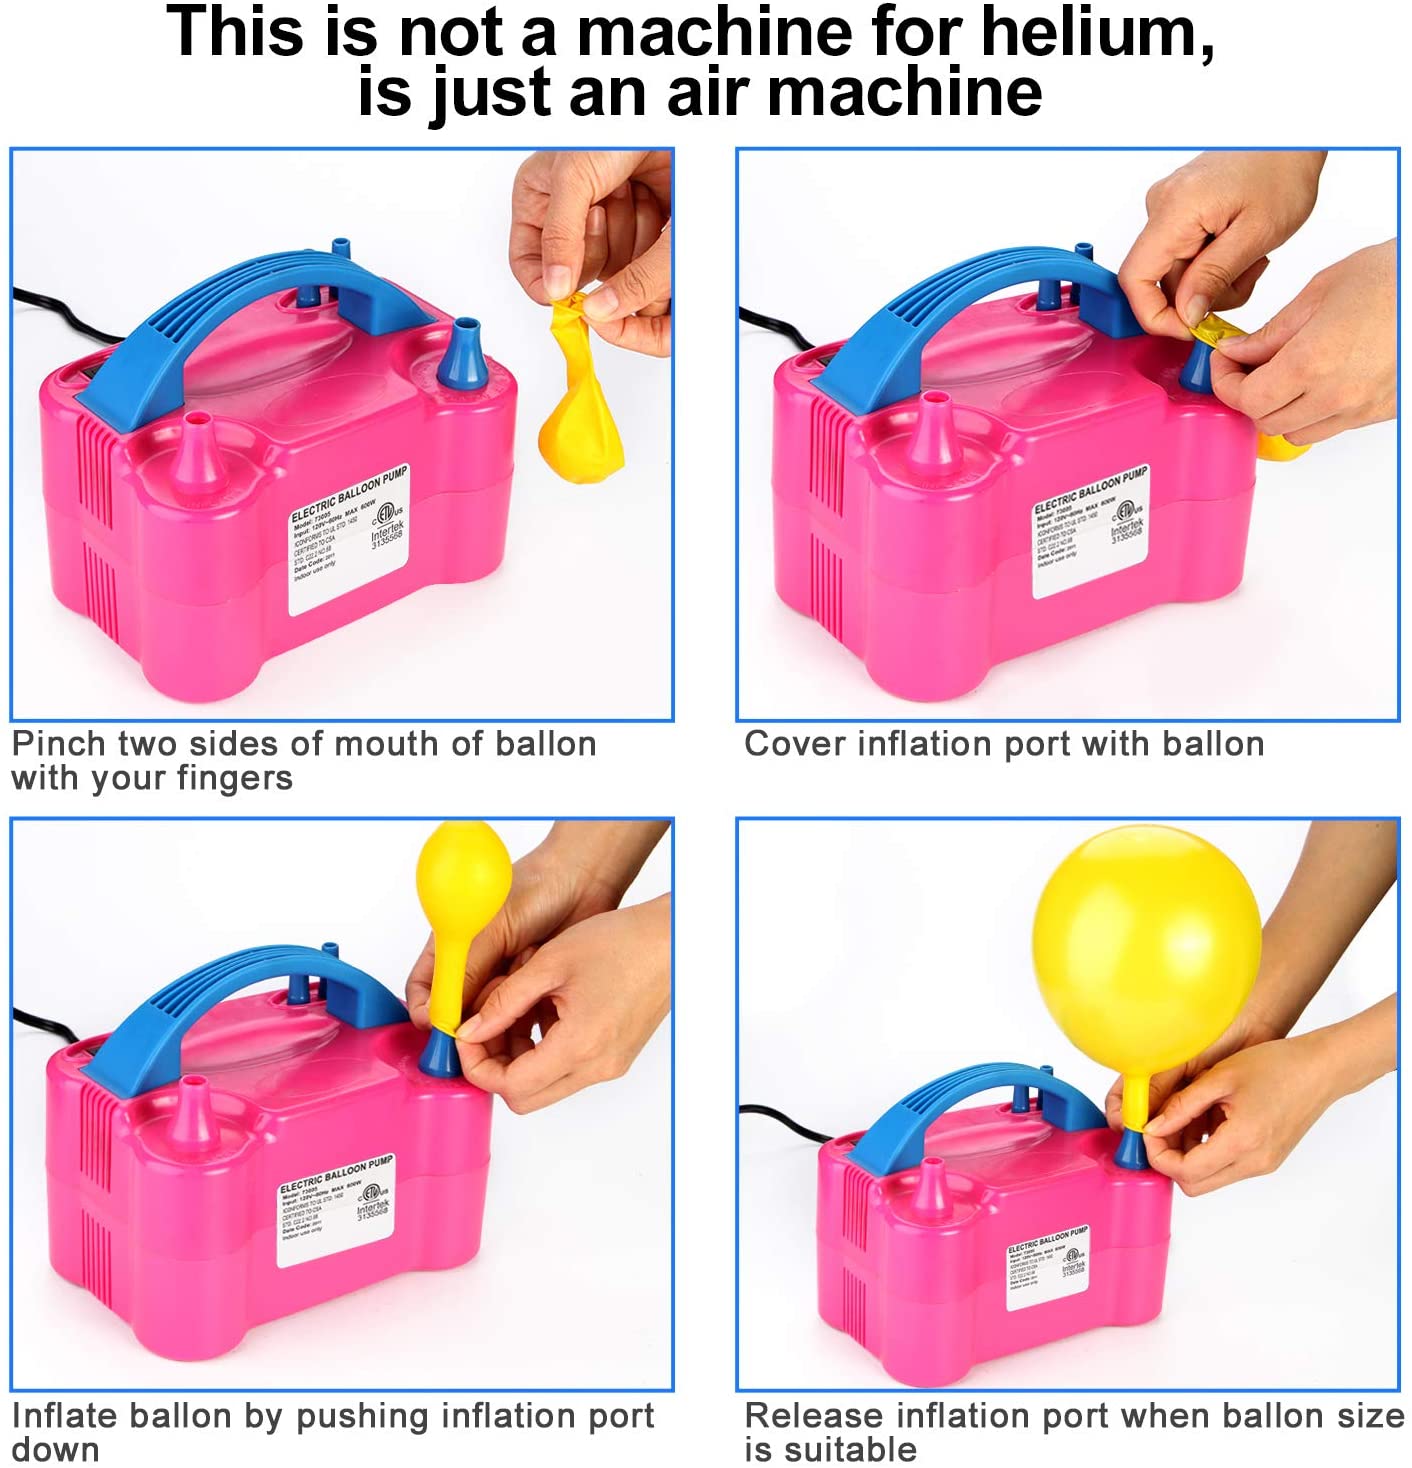 CLZ192 Elektrikli Balon Pompası Çift Uçlu Çift Çıkışlı Balon Makinası (4172)